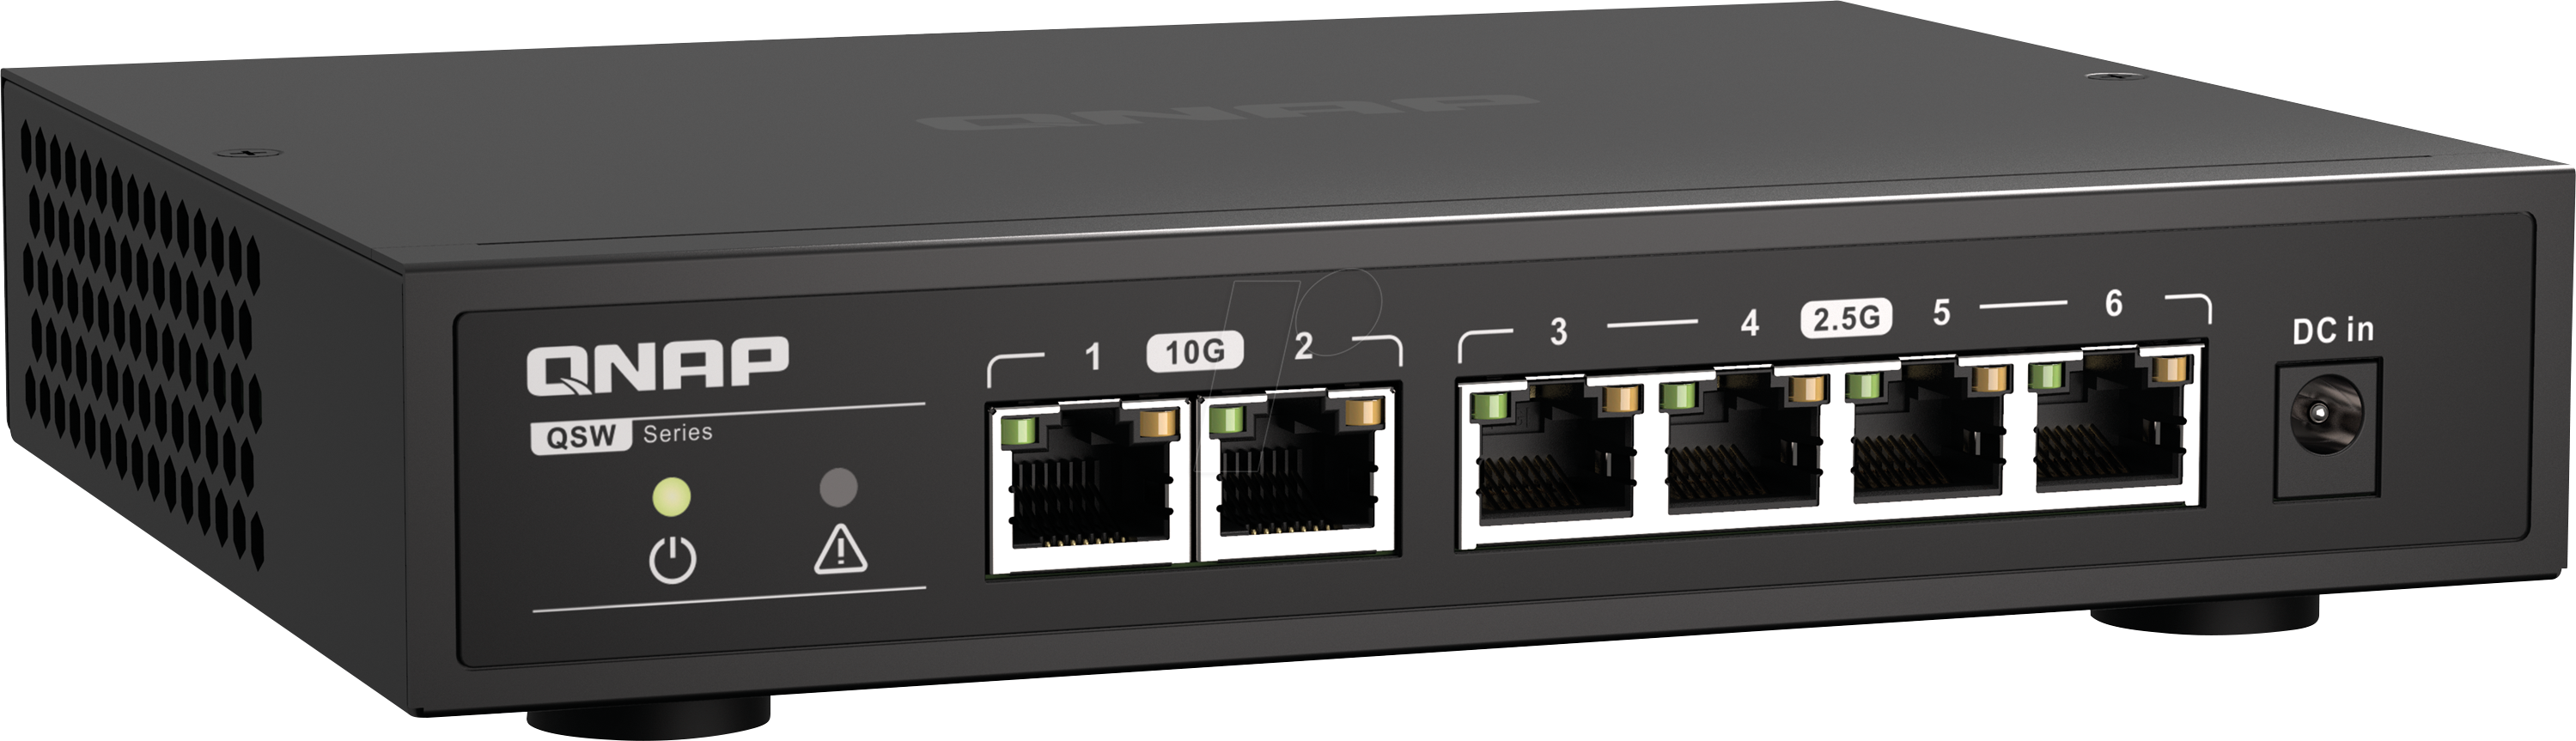 QNAP QSW-2104-2T - Switch, 6-Port, 2,5 Gigabit Ethernet